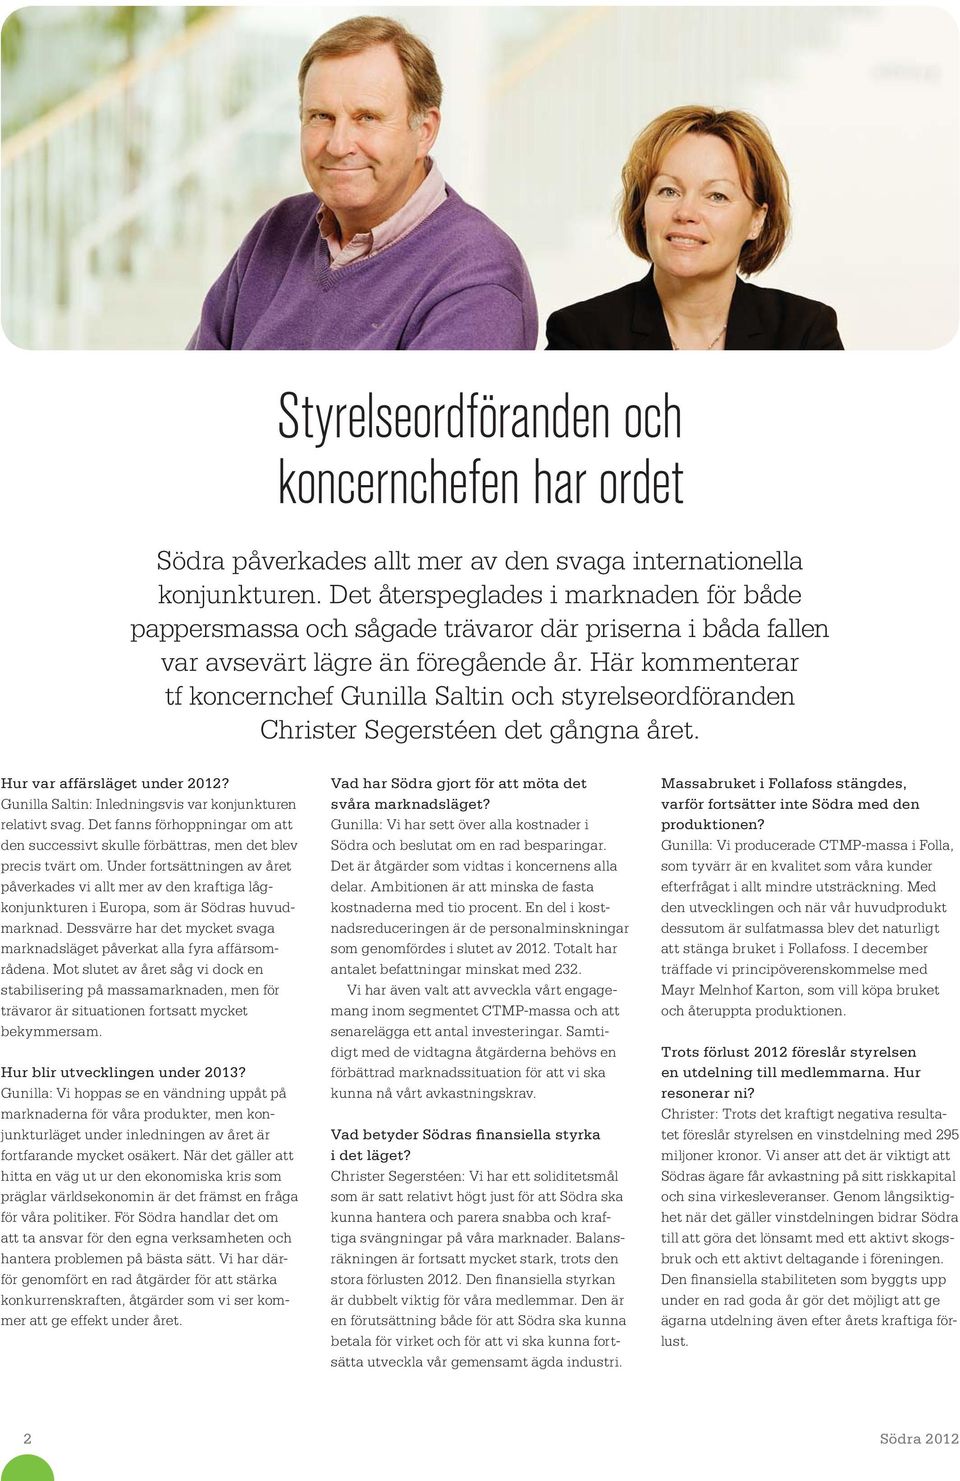 Här kommenterar tf koncernchef Gunilla Saltin och styrelse ordföranden Christer Segerstéen det gångna året. Hur var affärsläget under 2012?